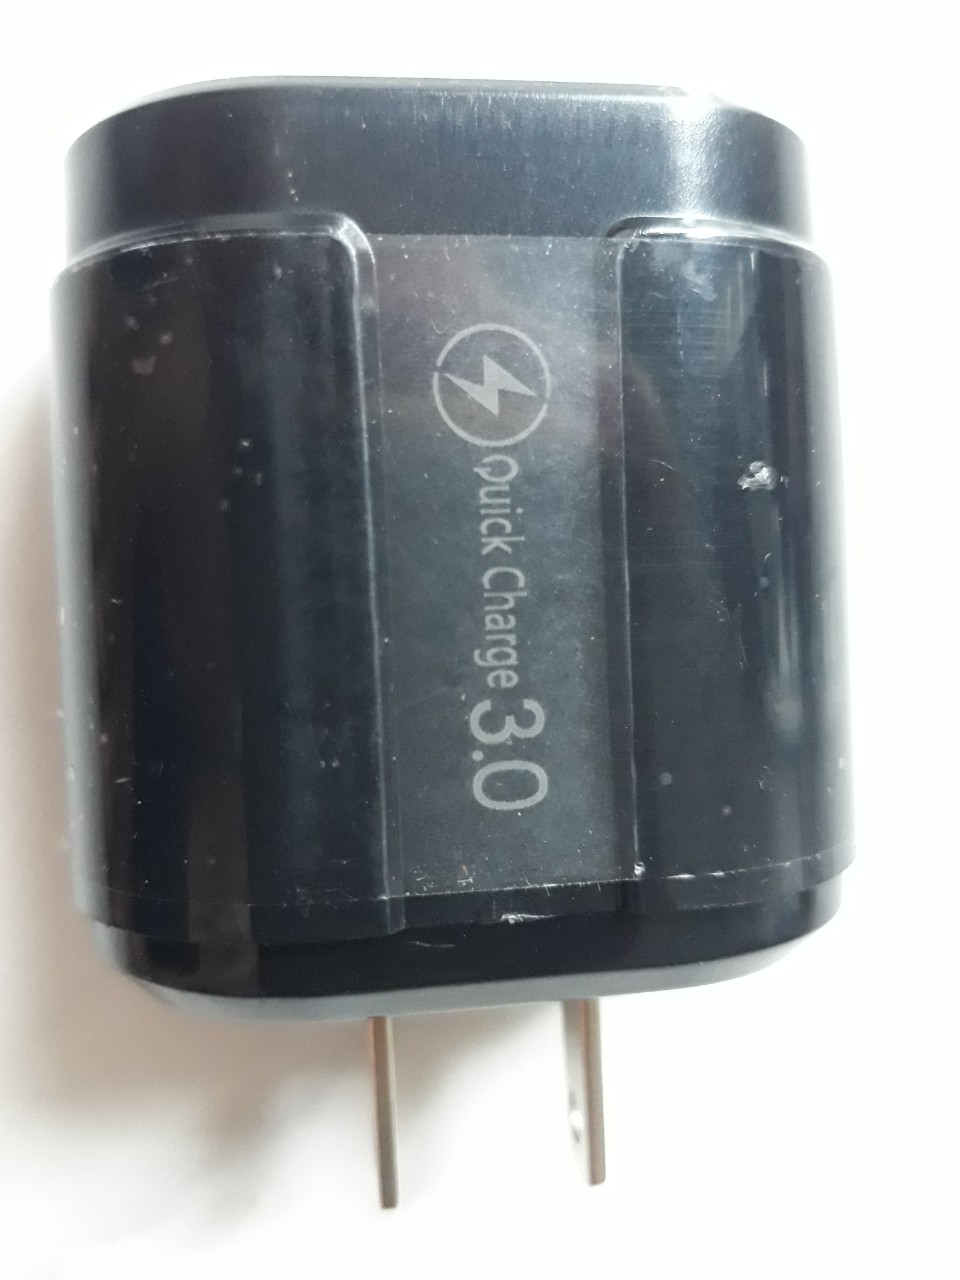 Củ Sạc Nhanh Quick Charge QC 3.0 (1 Đầu USB) Dùng Cho Thiết Bị Iphone/ Samsung/ Android - DT045